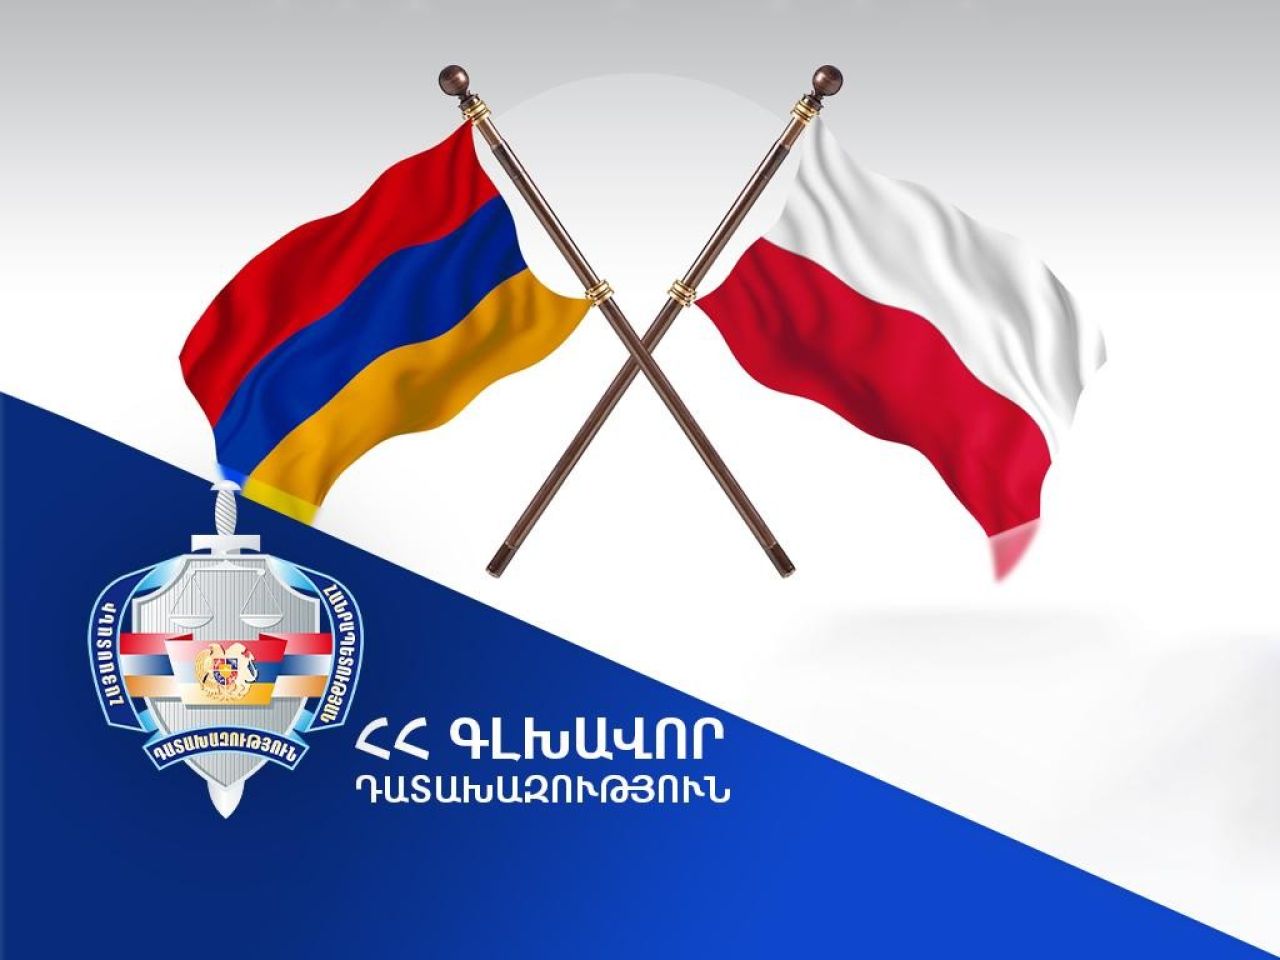 Լեհաստանը բավարարել է Հայաստանի Հանրապետության գլխավոր դատախազության միջնորդությունը